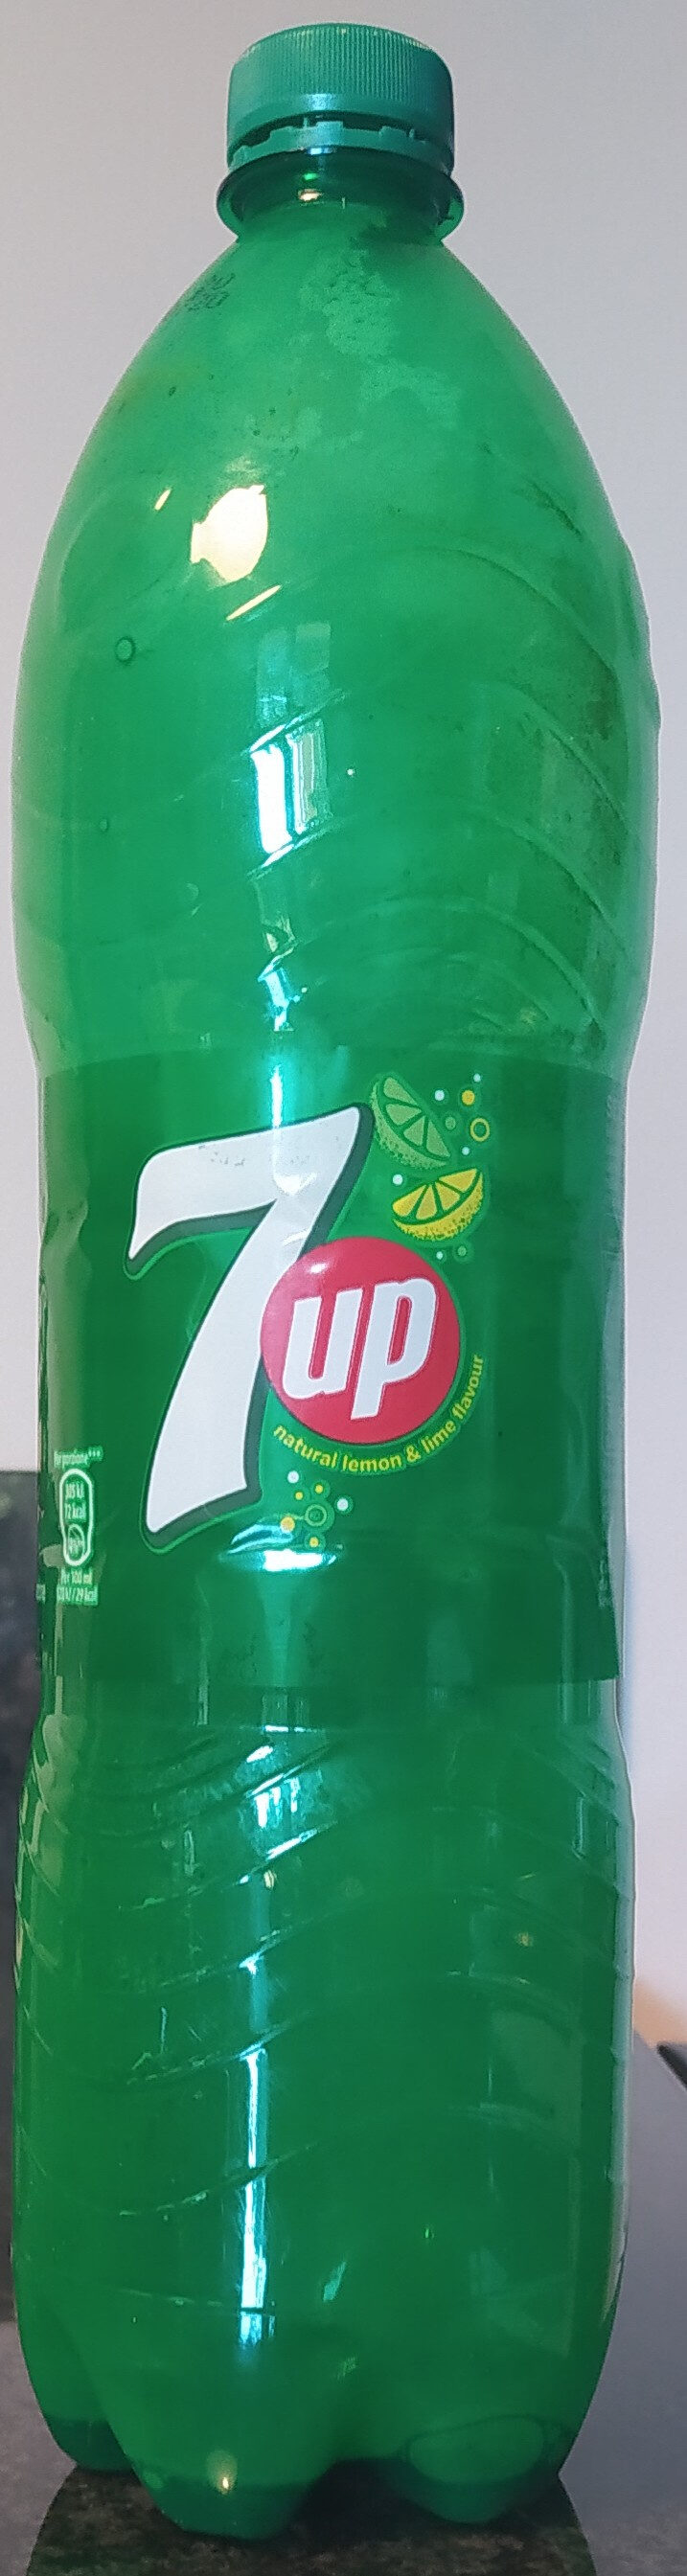 7up - نتاج - it